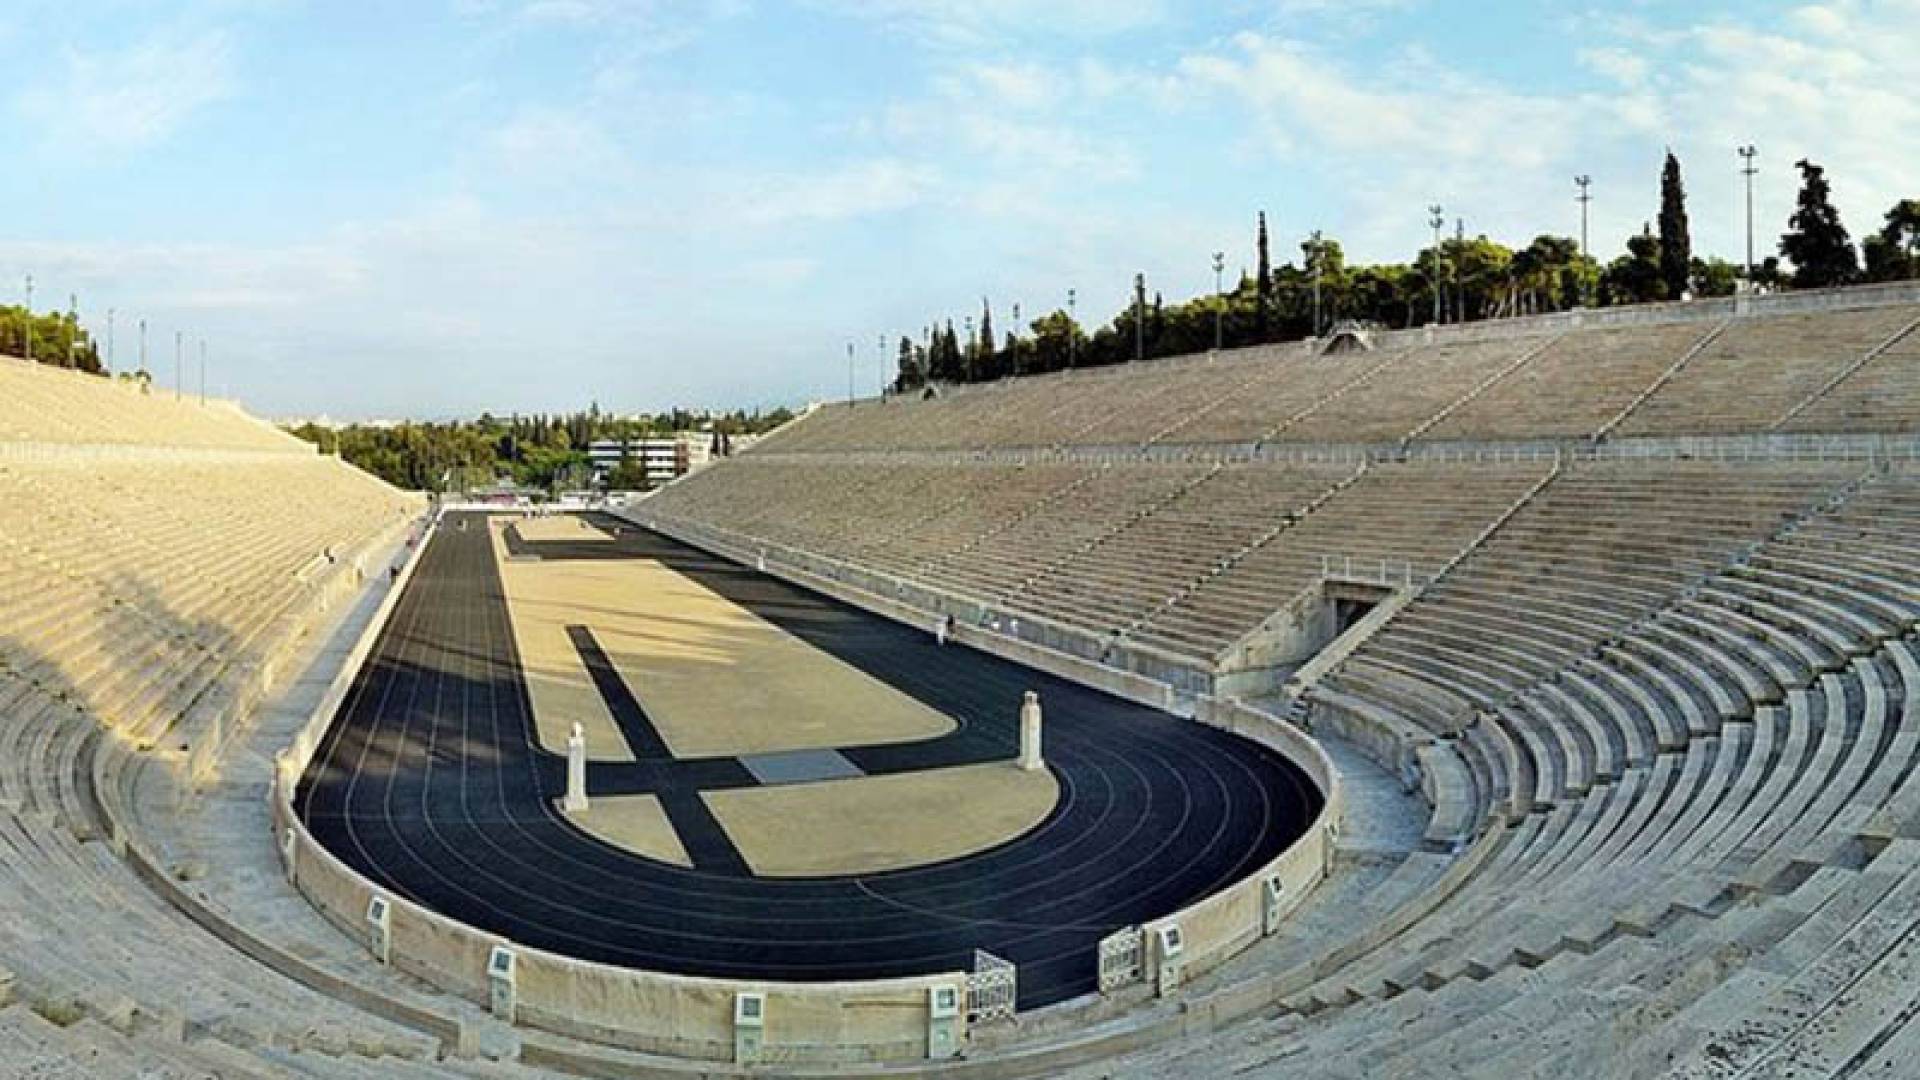 STADE PANATHENAÏQUE, Stade Panathenaïque